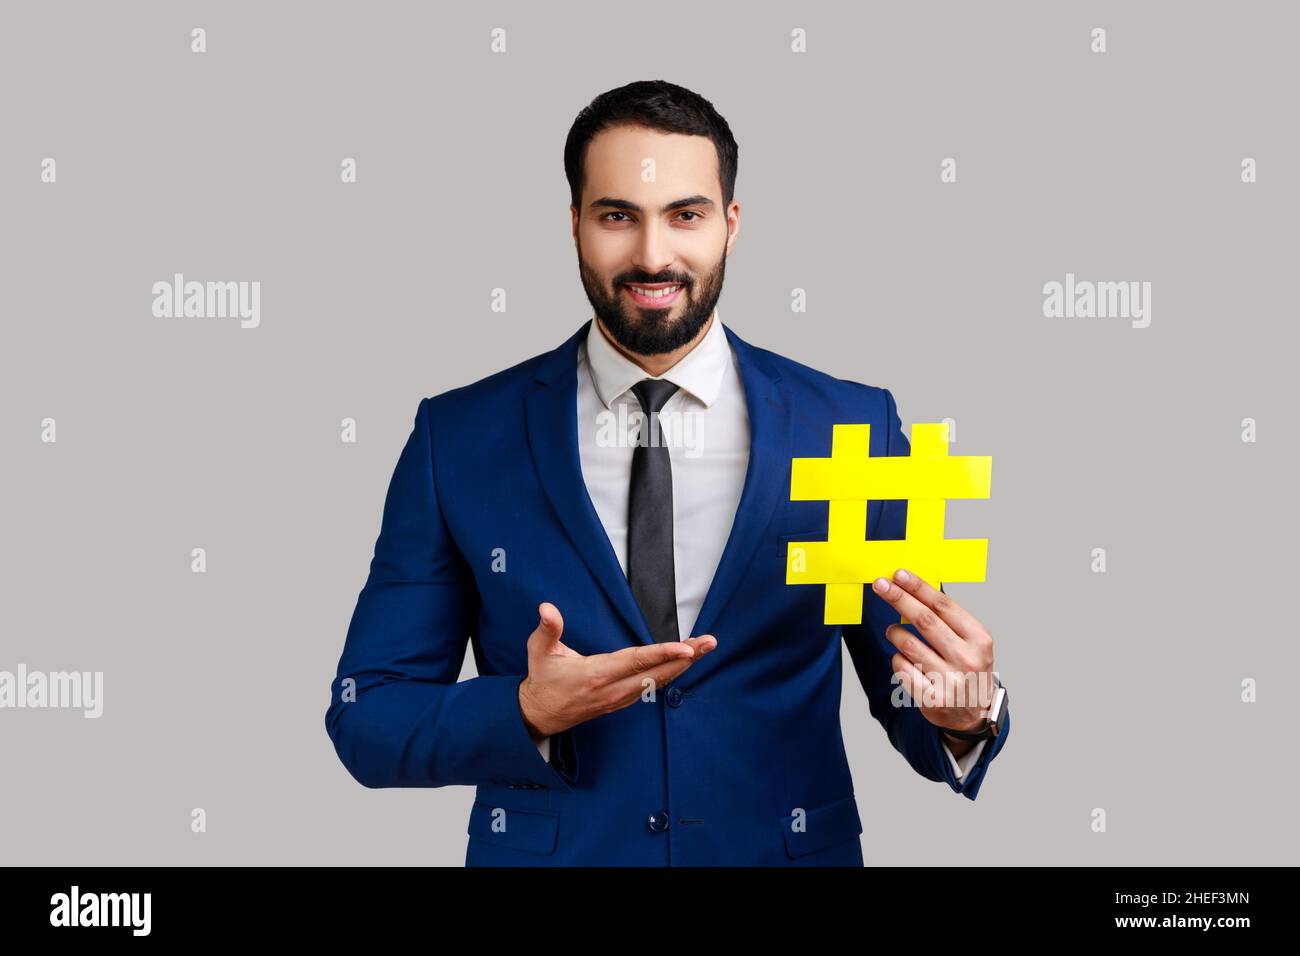 Ritratto di uomo sorridente bearded che presenta hashtag giallo, tagging tendenze del blog, argomento virale nel social network, vestito stile ufficiale. Studio interno girato isolato su sfondo grigio. Foto Stock